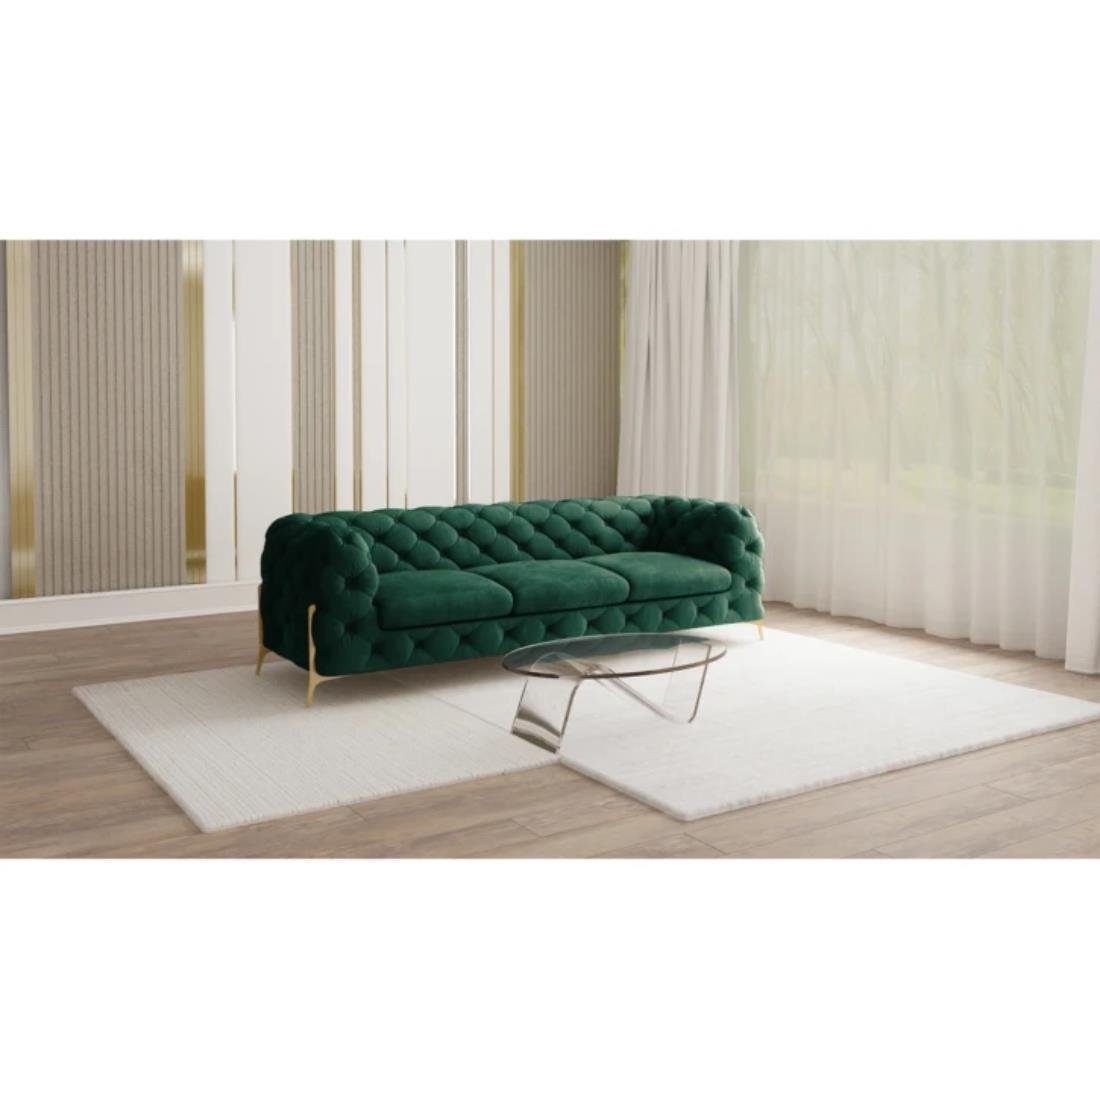 S-Style Möbel 3-Sitzer Ashley Chesterfield Sofa mit Goldene Metall Füßen, mit Wellenfederung Flasche Grün